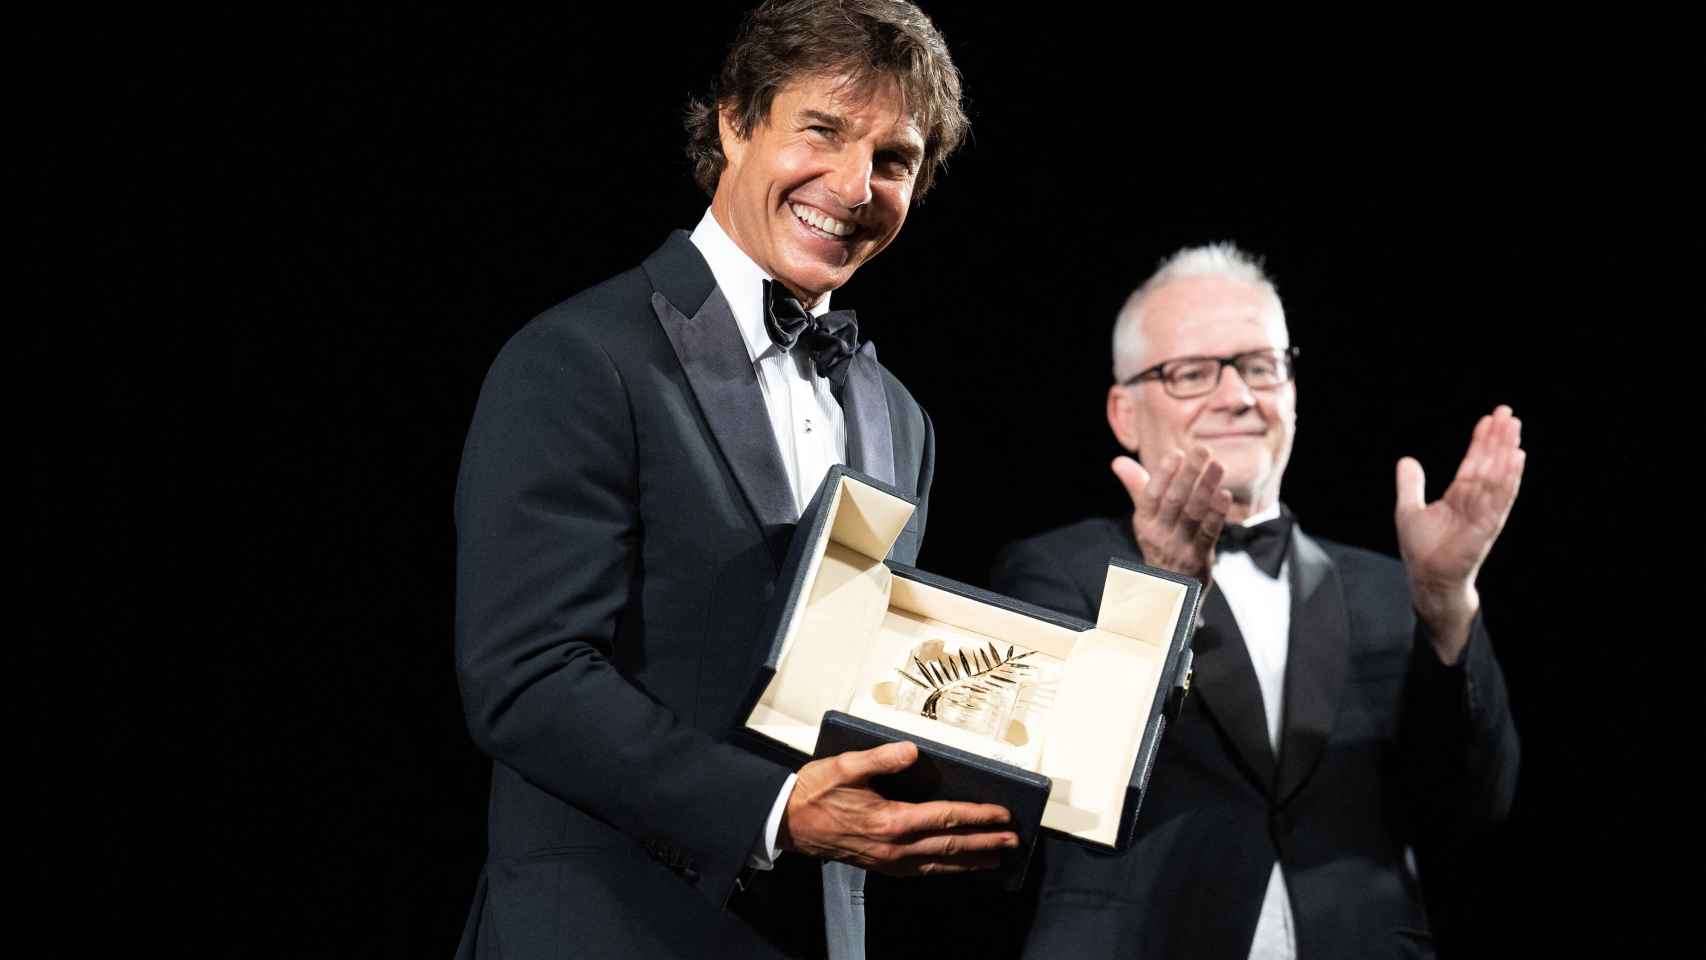 Tom Cruise recibió la Palma de Oro honorífica en el Festival de Cannes por sorpresa